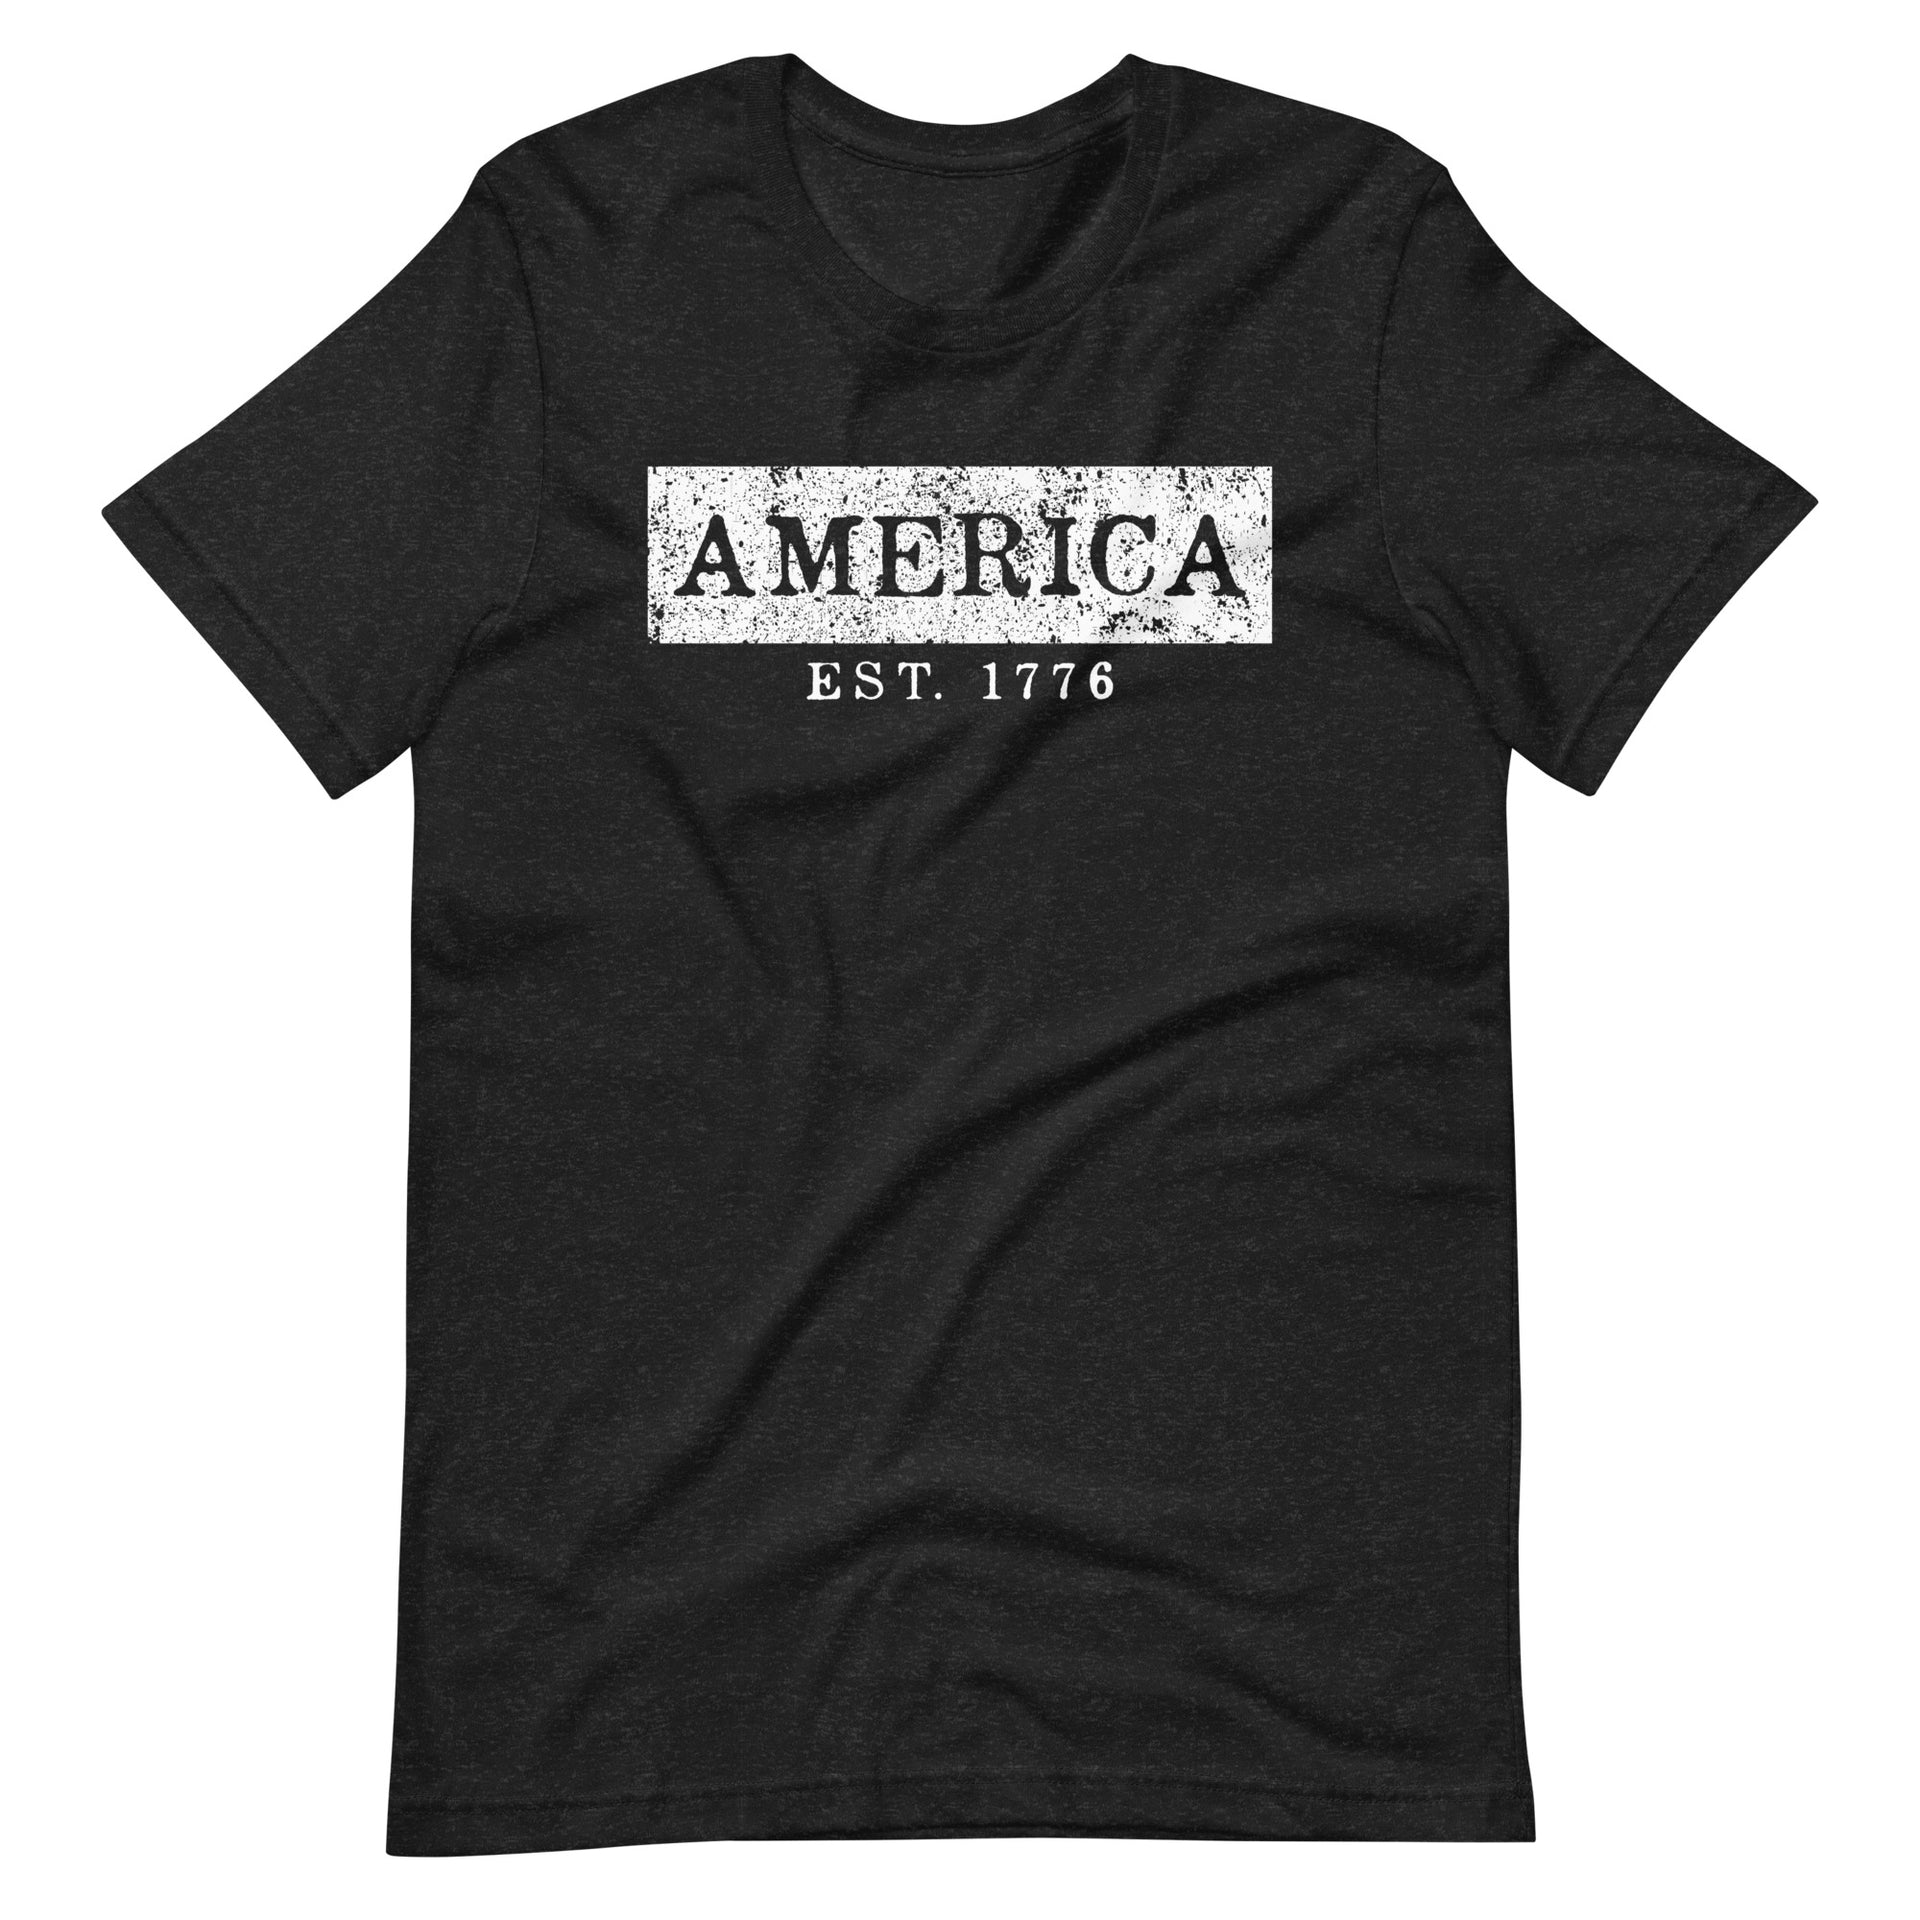 America Est. 1776 Unisex t-shirt